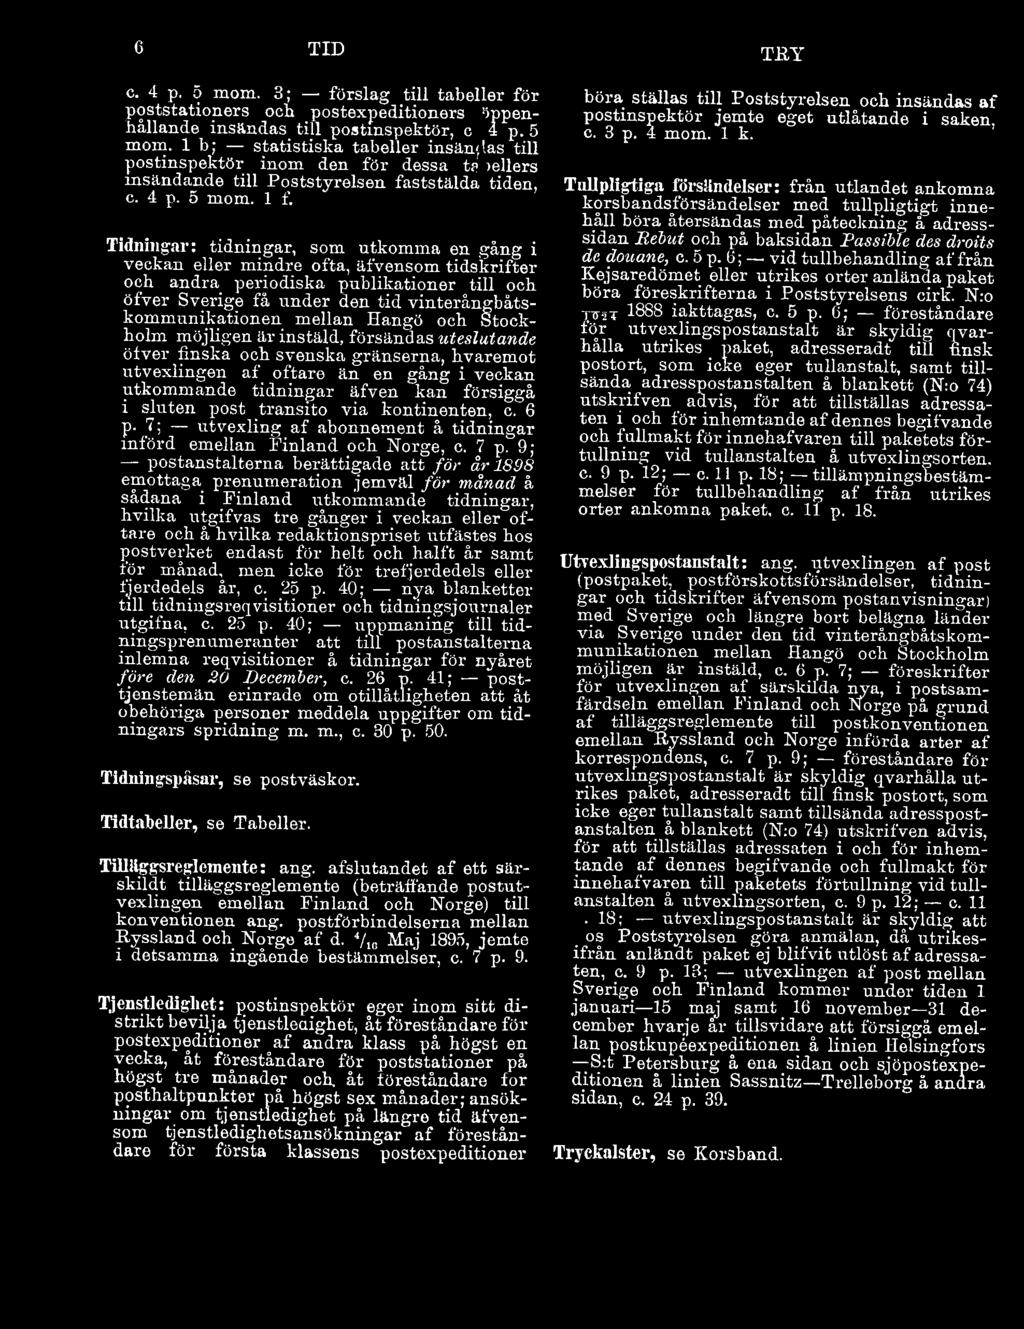 sluten post transito via kontinenten, c. 6 p- 7; utvexling af abonnement å tidningar införd emellan Finland och Norge, c. 7 p.